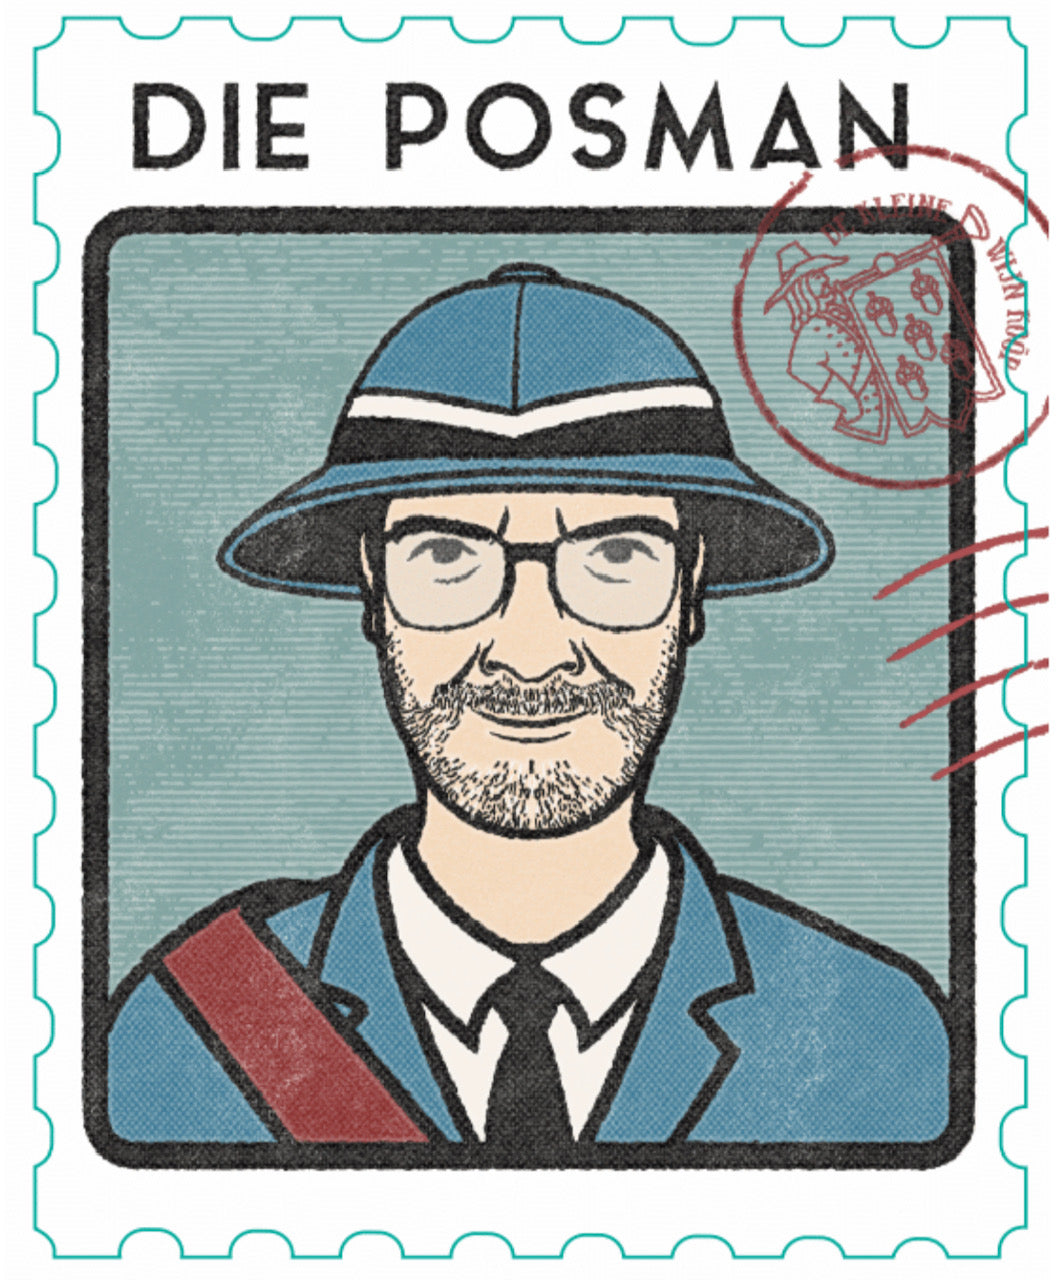 Featured Wine - "Die Posman" (The Postman)